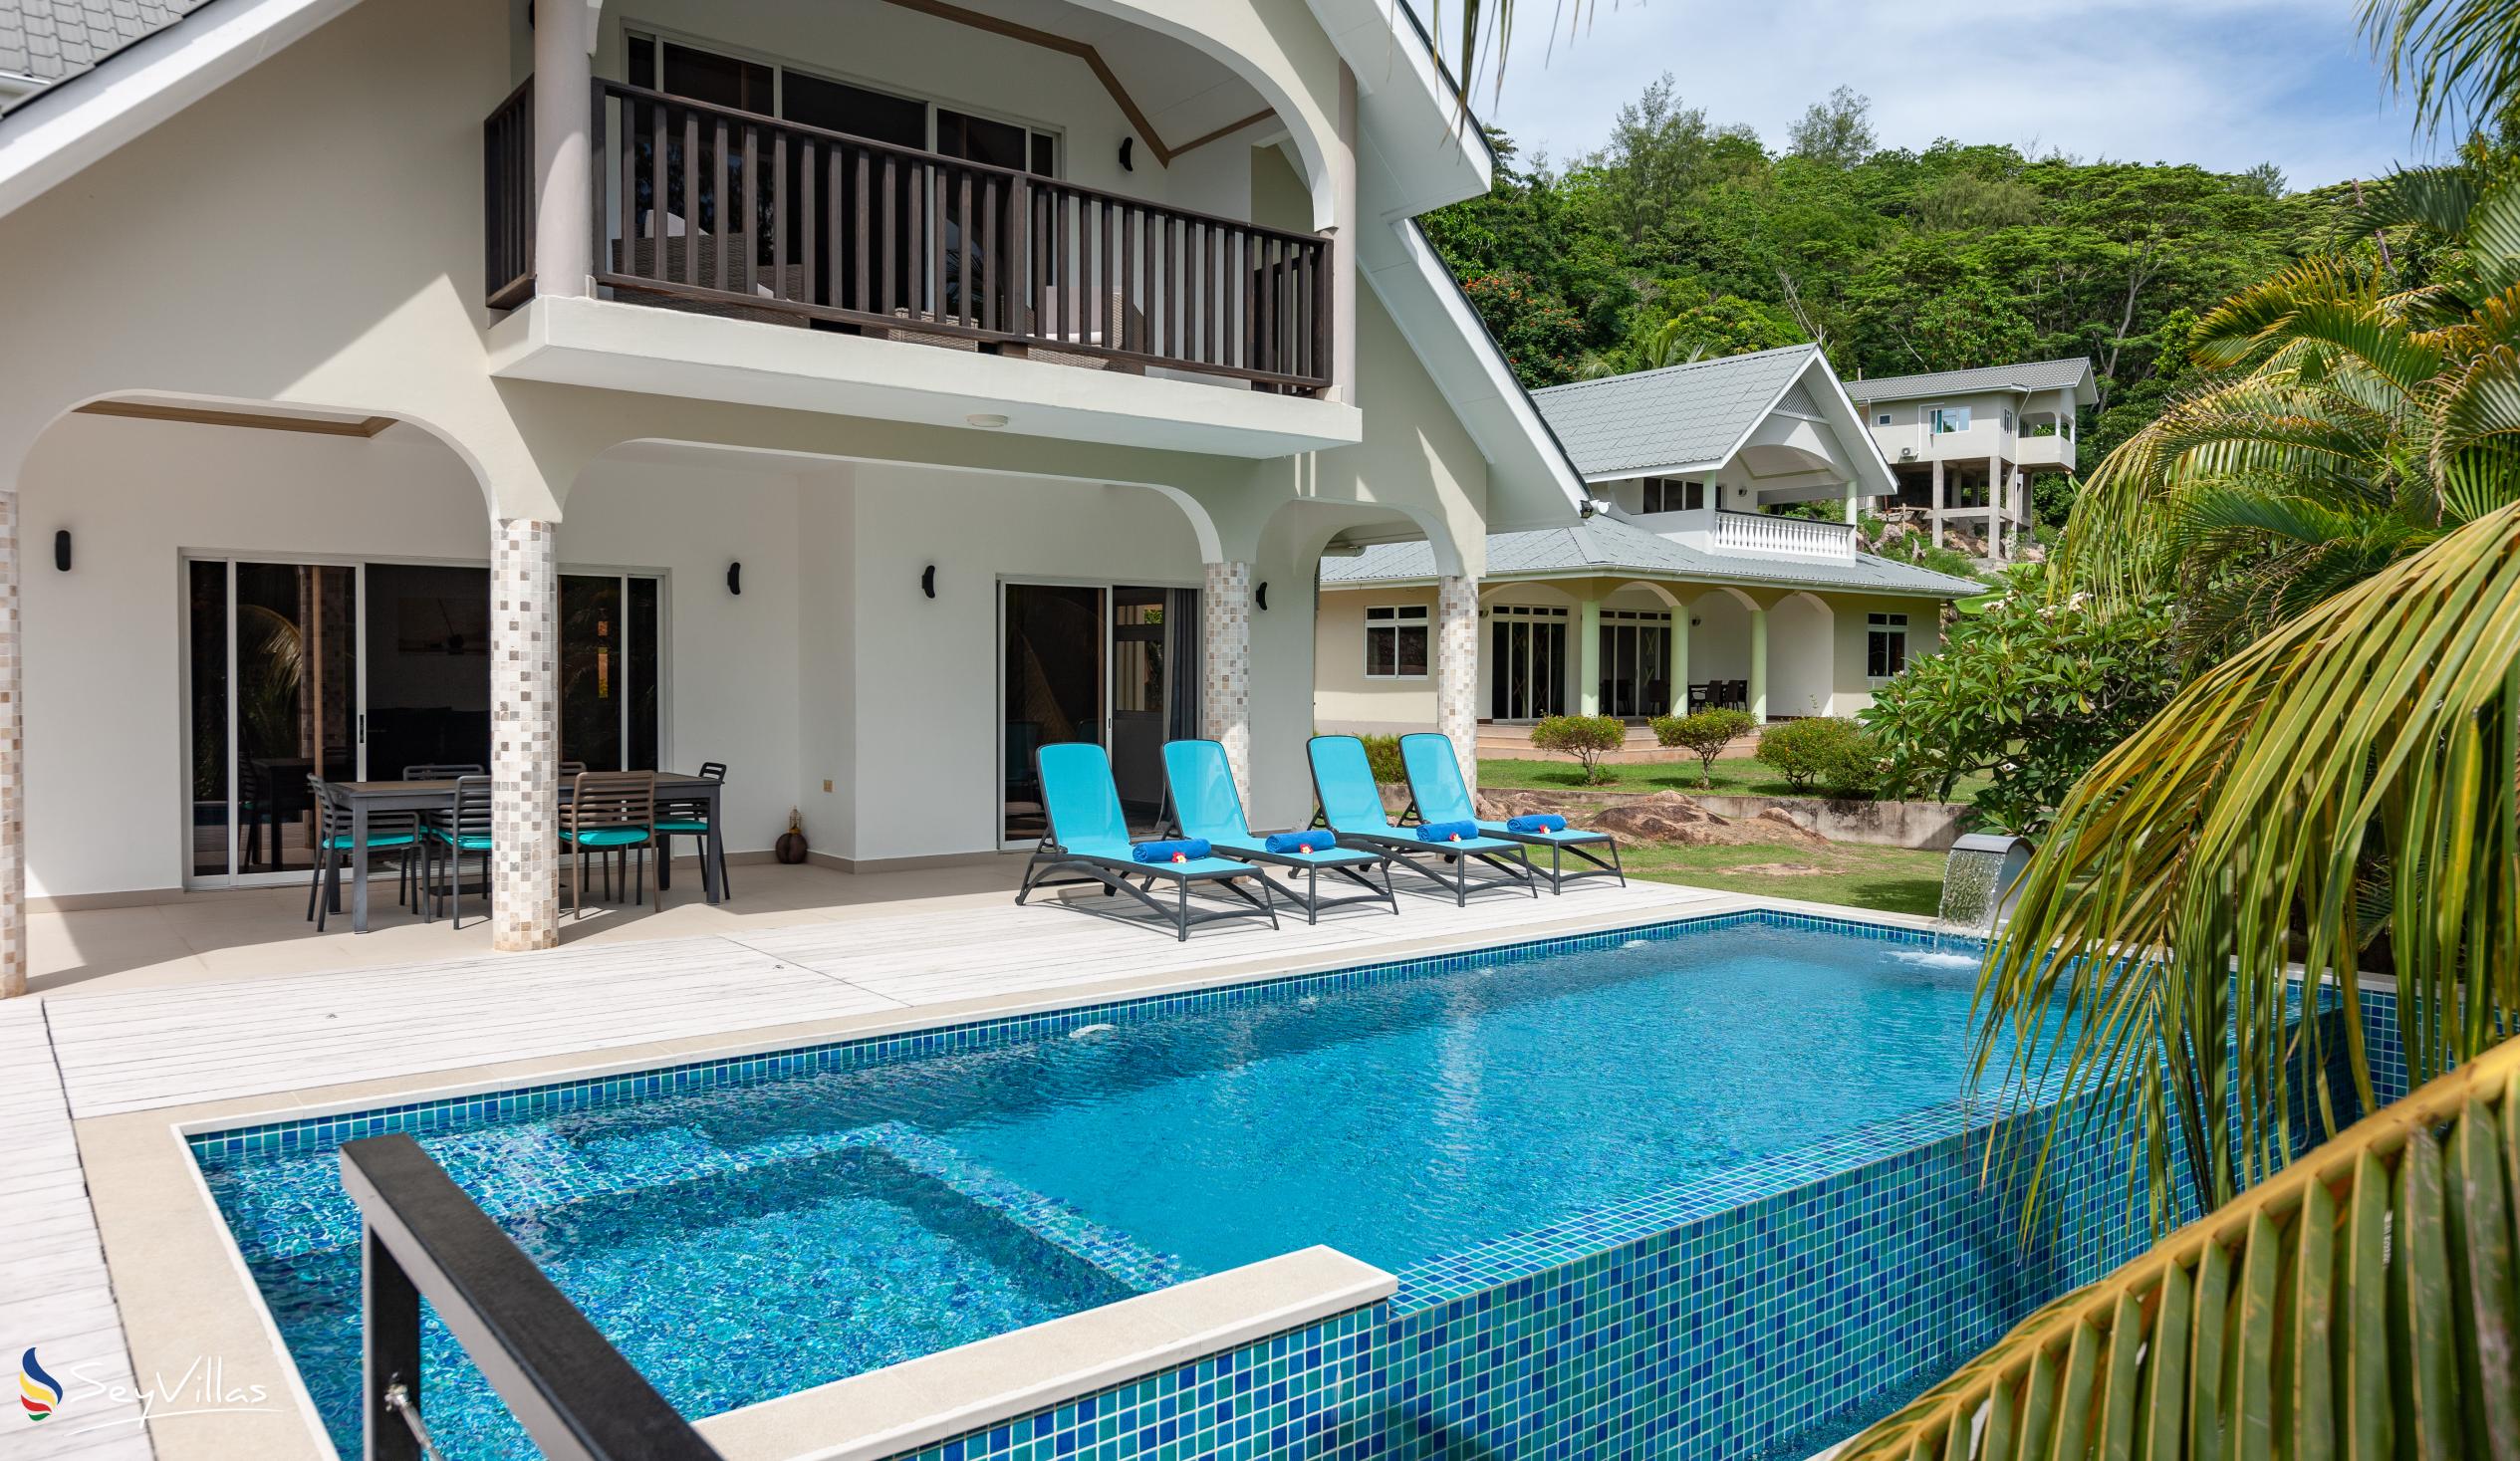 Foto 37: Tranquility Villa - Aussenbereich - Praslin (Seychellen)